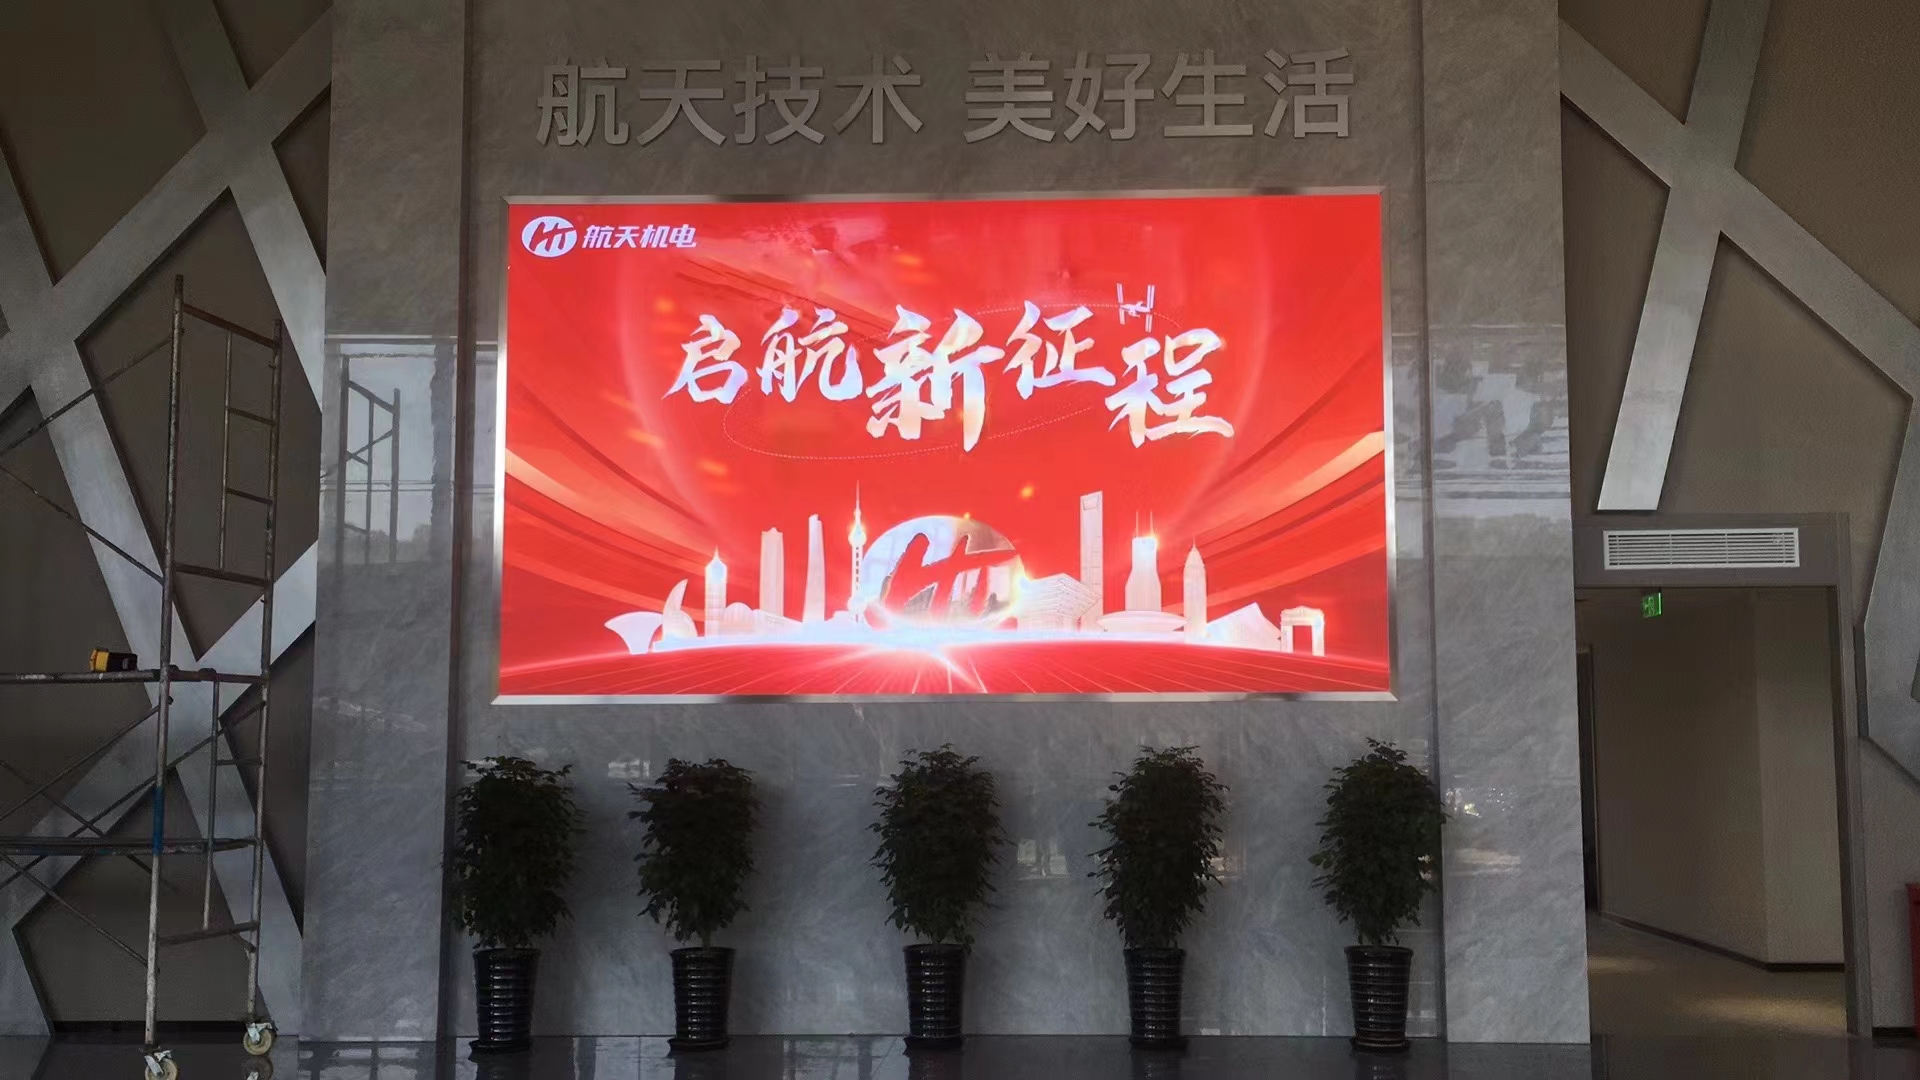 上海航天机电LED显示屏项目